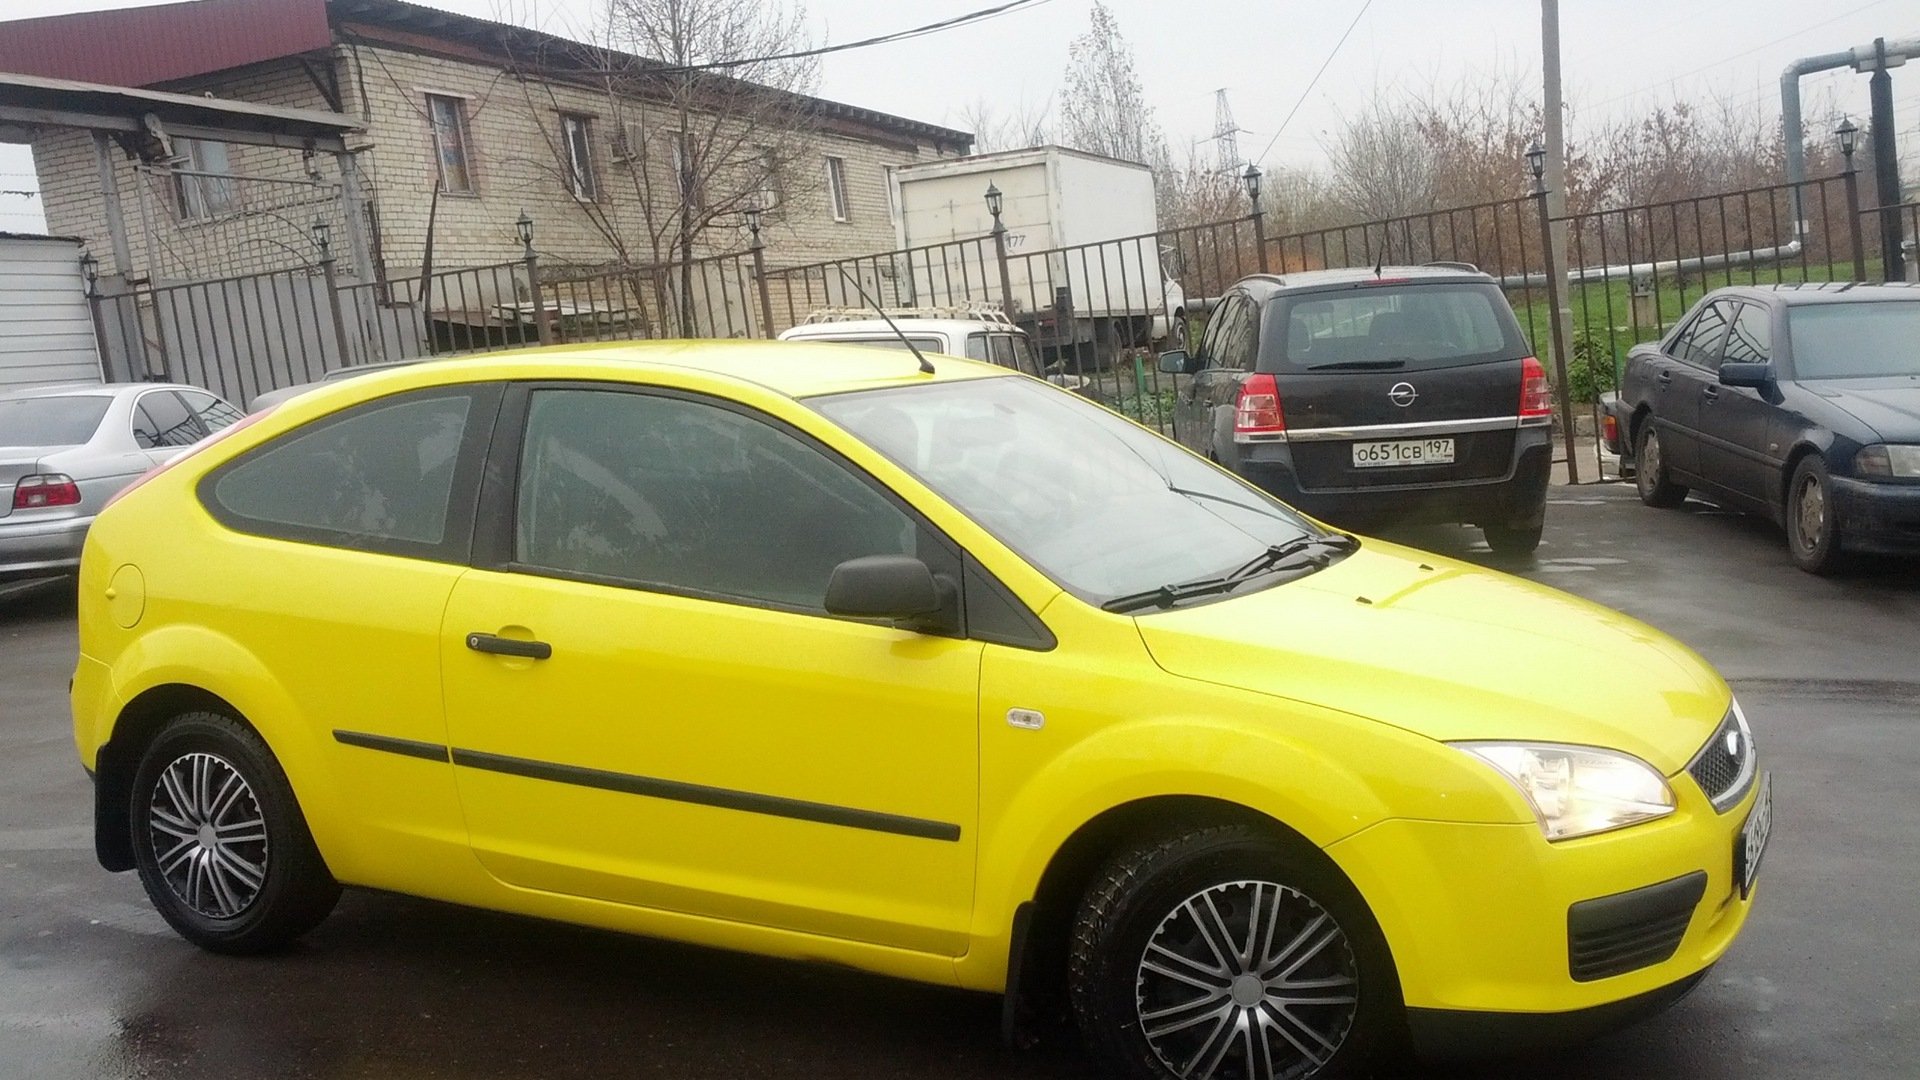 Купить форд хэтчбек на авито. Форд фокус 2 желтый. Желтый Форд фокус 2 хэтчбек. Форд фокус 2 универсал желтый. Ford Focus 2 2007 хэтчбек.